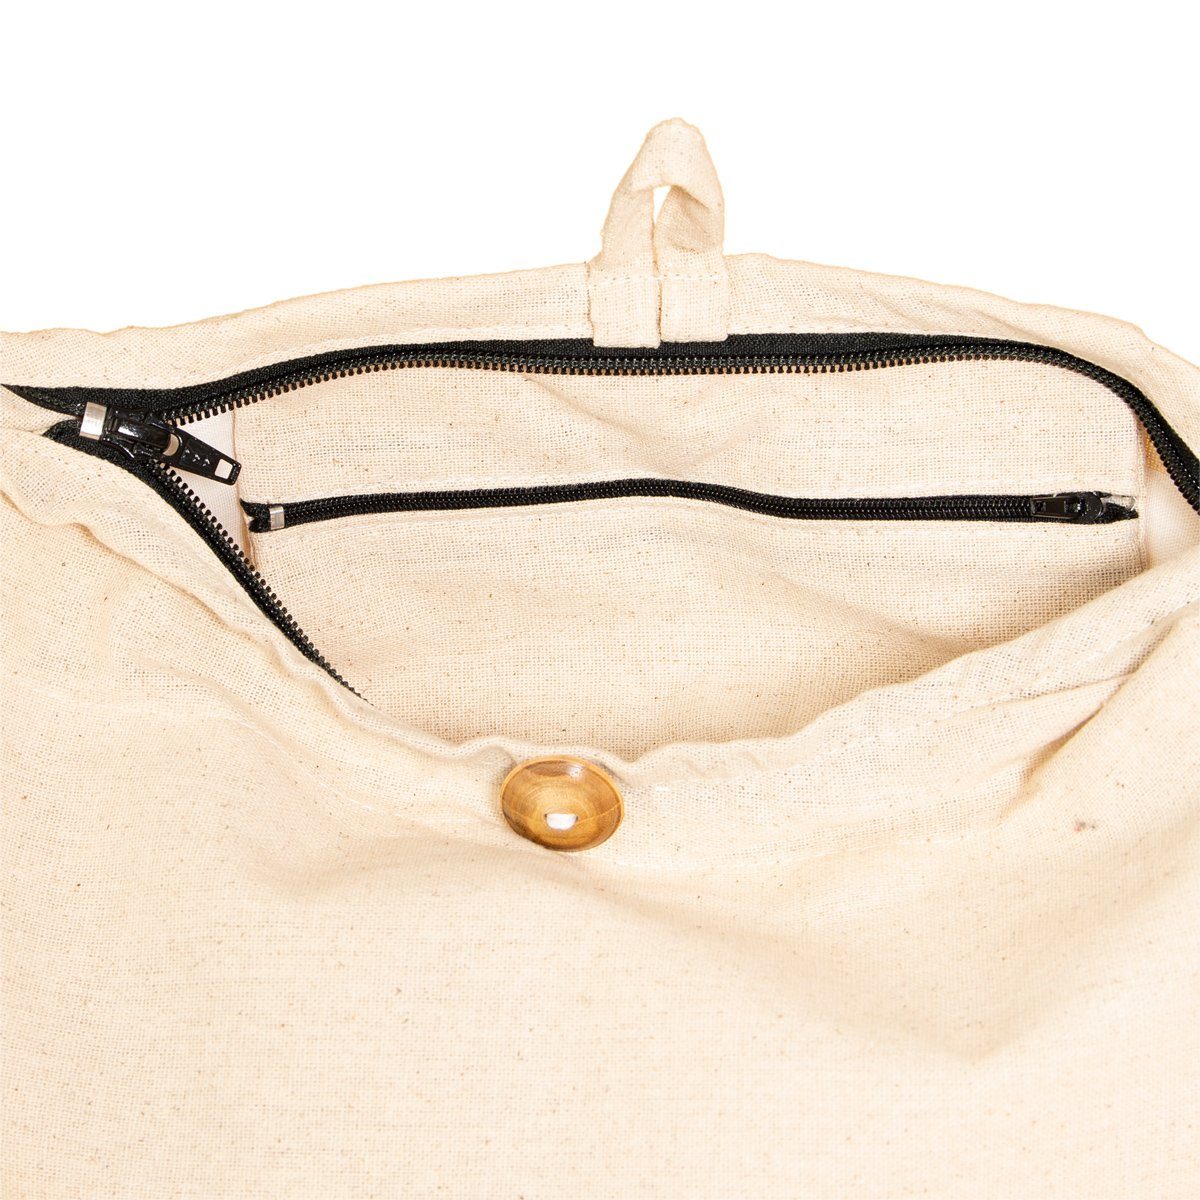 Umhängetasche PANASIAM auch als aus Wickeltasche Größen, Handtasche Schultertasche einfarbig Baumwolle in Natural 2 Beuteltasche Strandtasche Schulterbeutel oder 100%